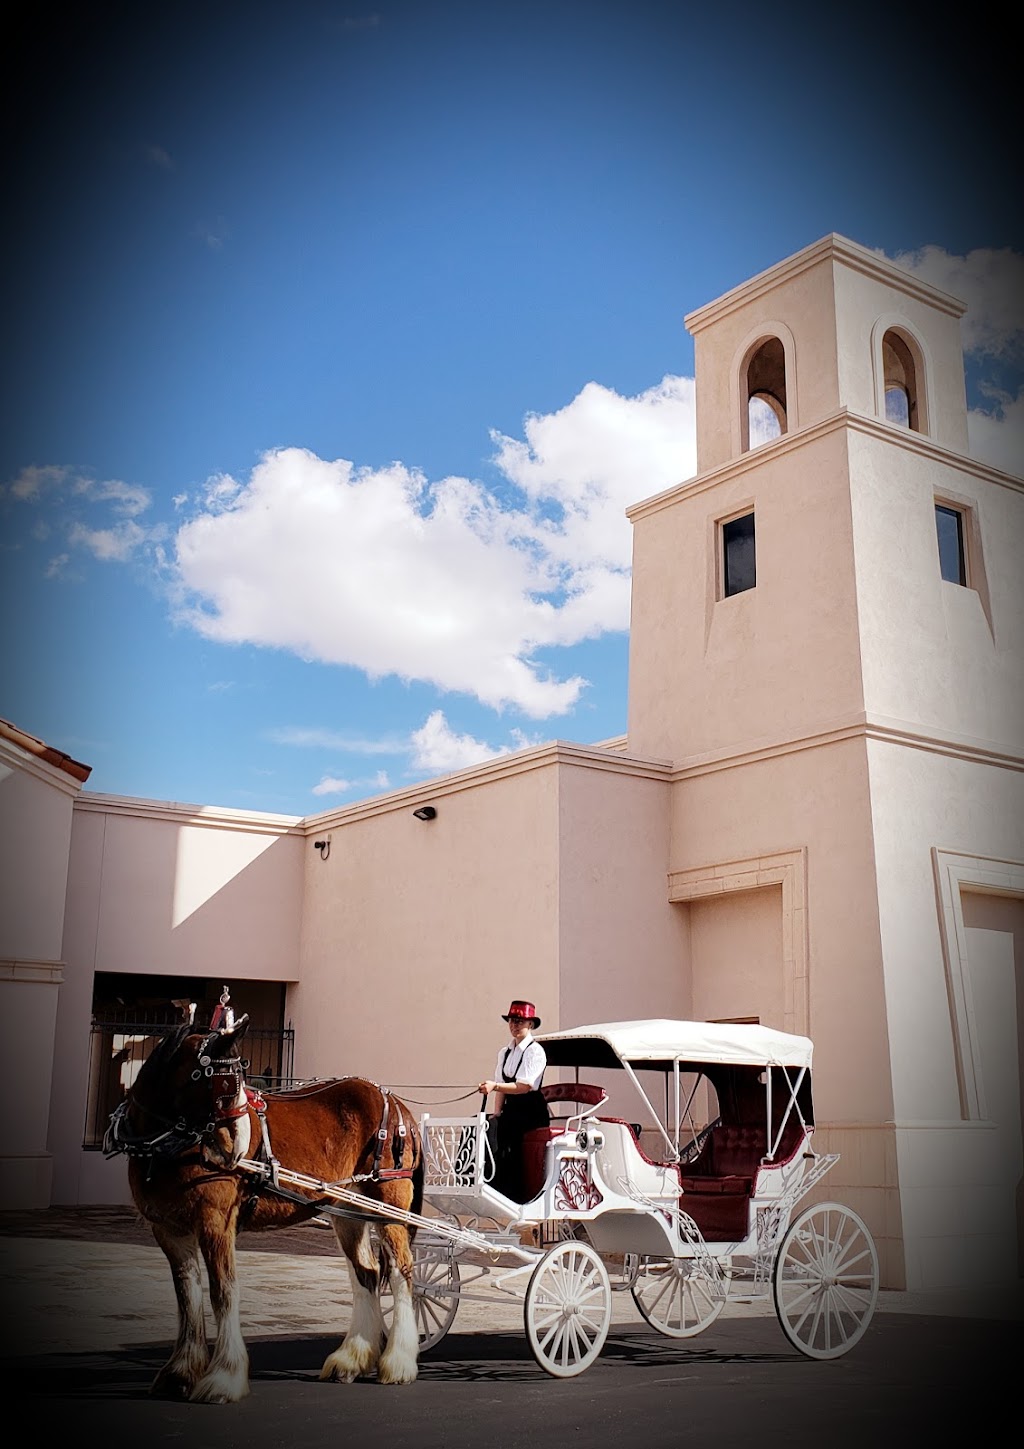 St. Thomas the Apostle Roman Catholic Parish | 5150 N Valley View Rd, Tucson, AZ 85718 | Phone: (520) 577-8780